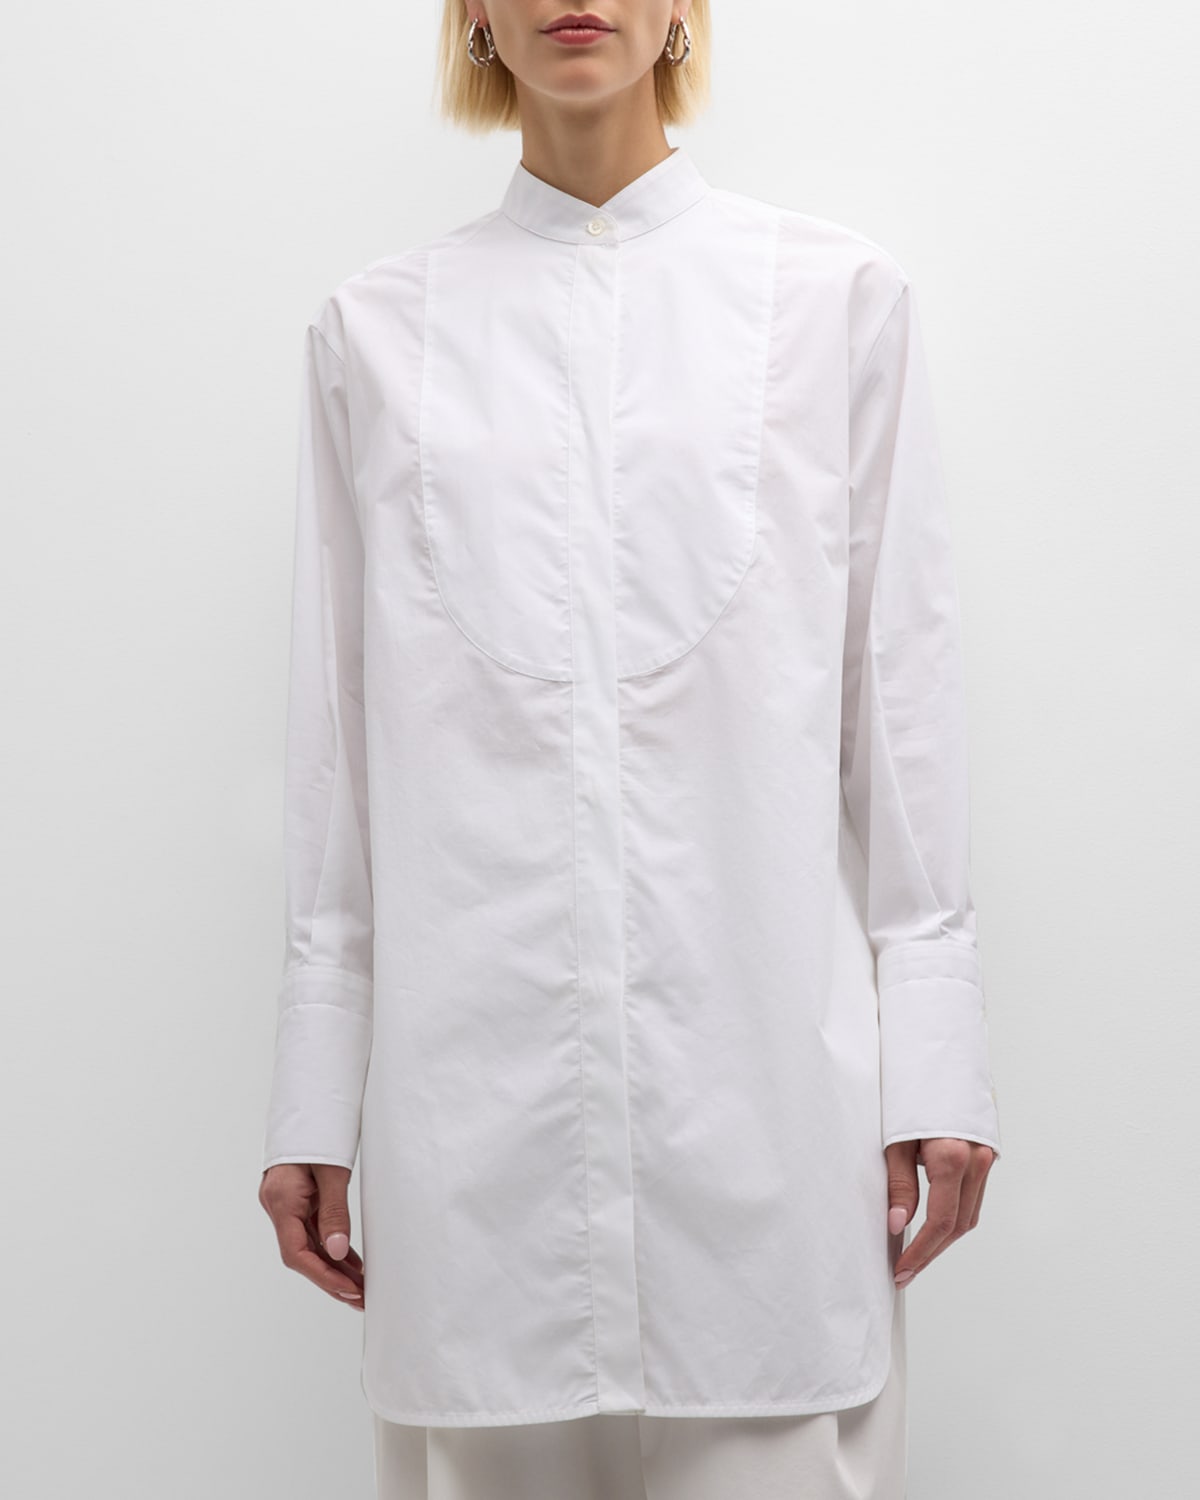 Emporio Armani Bib Front Tunic Shirt In Solid White